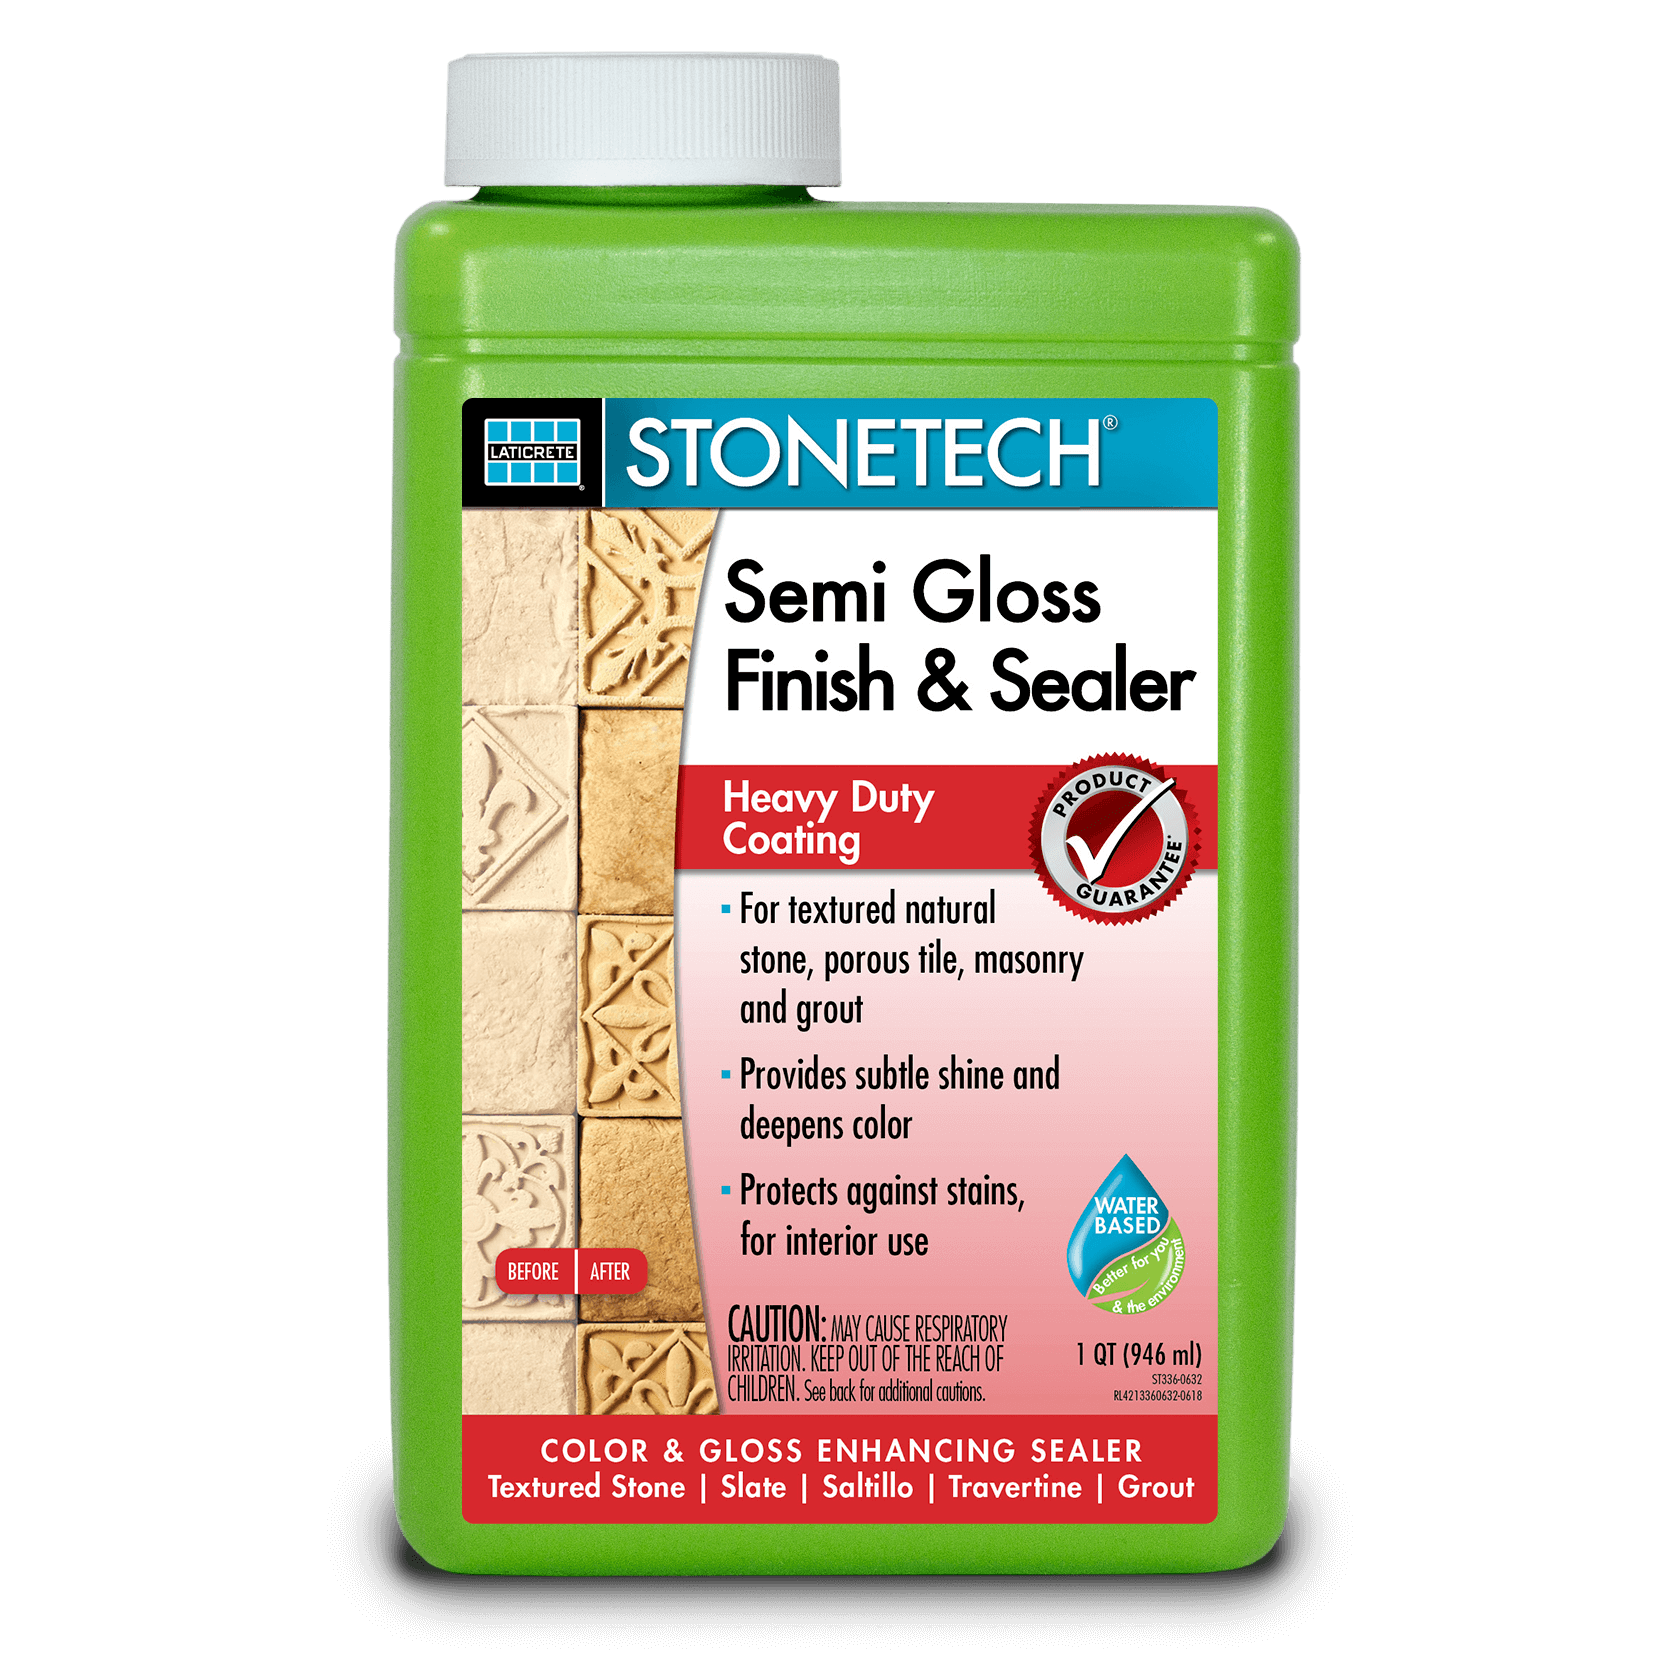 STONETECH® Semi Gloss Finish & Sealer